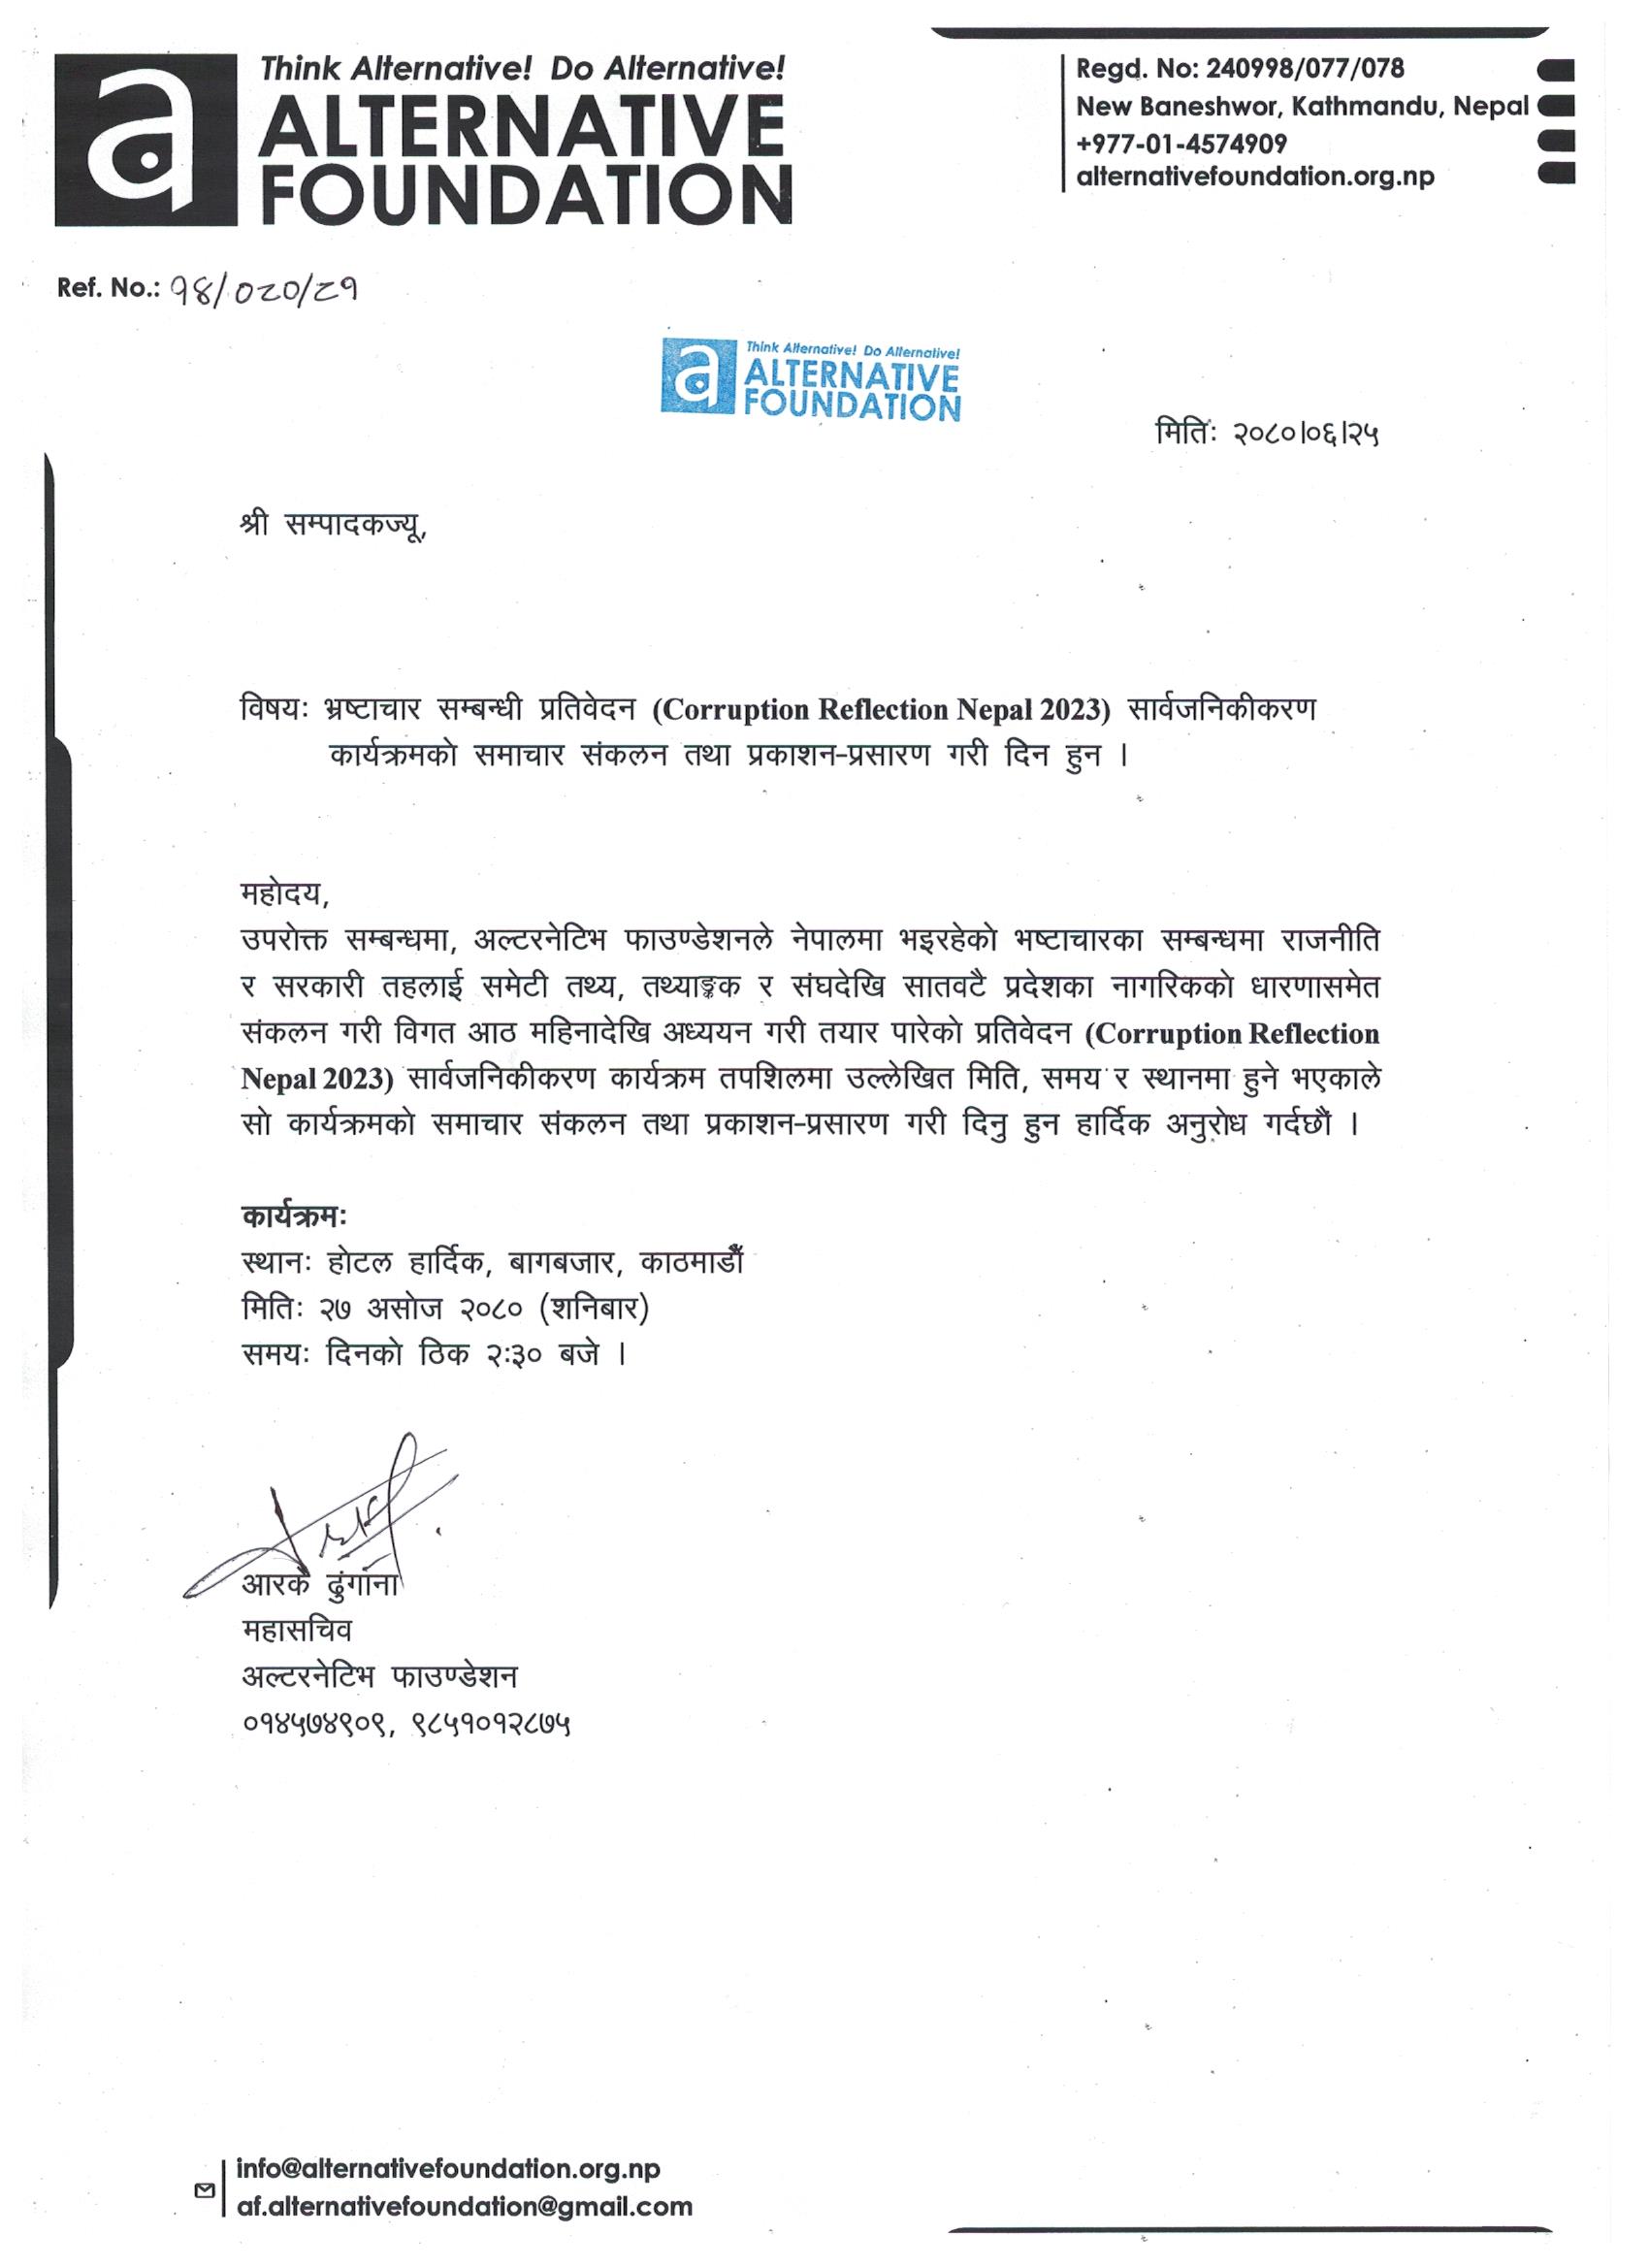 Corruption Reflection Nepal 2023 (CRN 2023) – Press Invitation